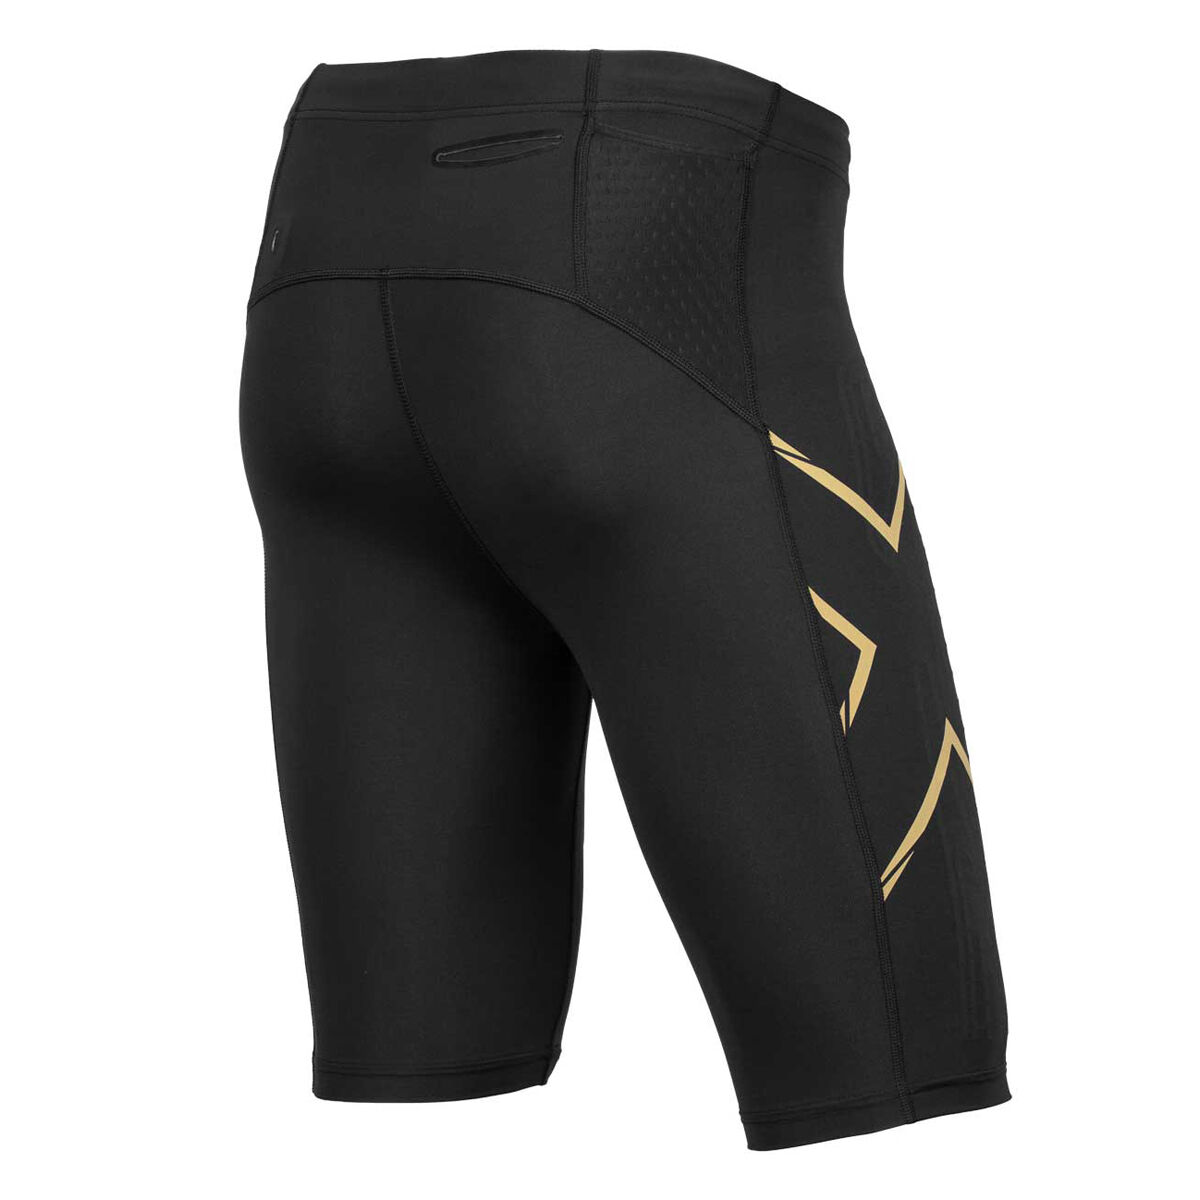 Calções 2XU Elite MCS Compression Shorts preto, Logo Dourado, GreenRoc